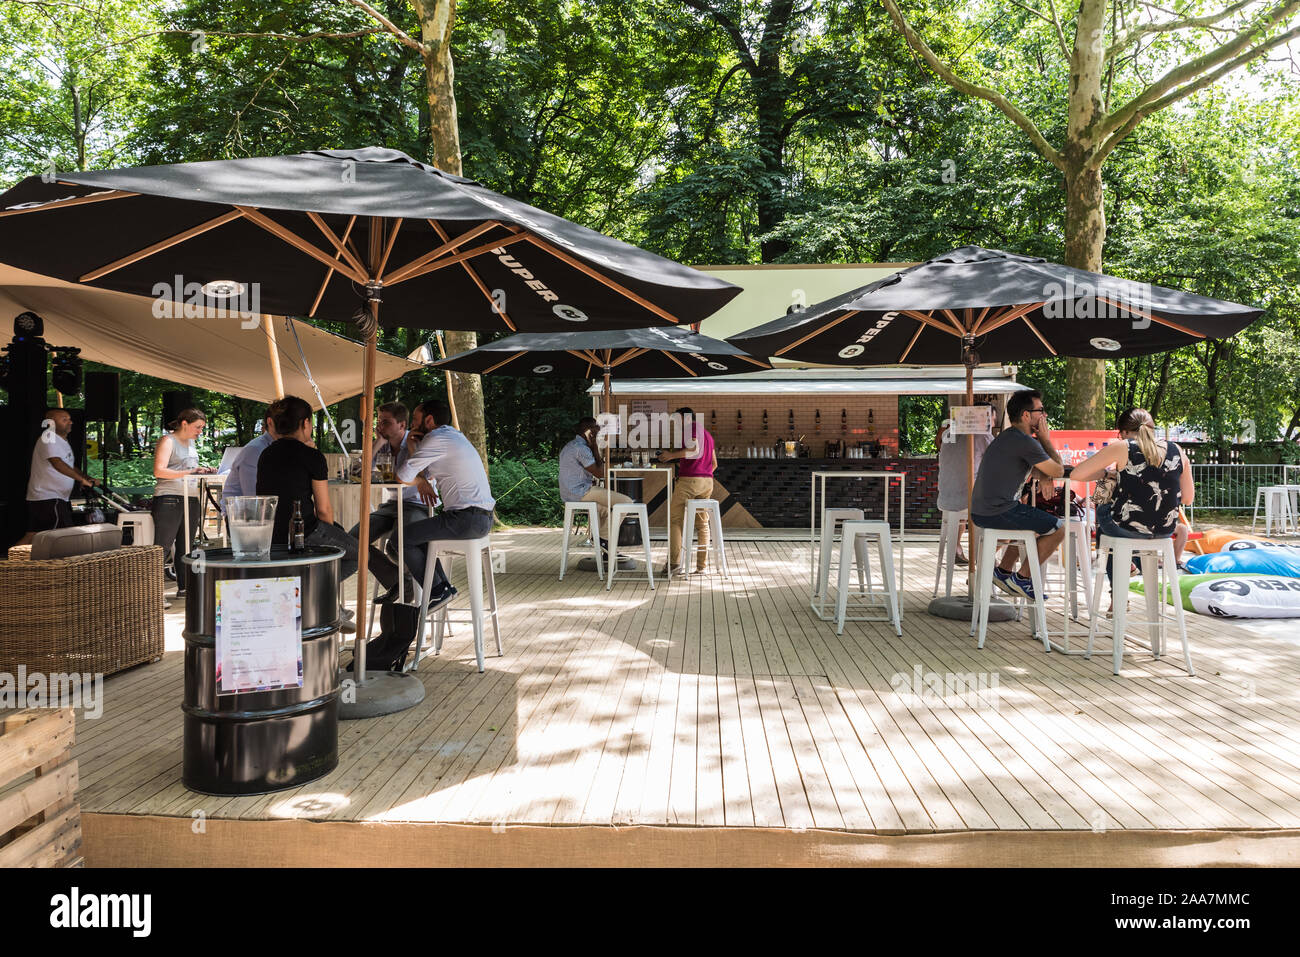 Vieille ville de Bruxelles / Belgique - 0625 : 2019 personnes bénéficiant d'un verre dans un bar pop up Super 8 dans le soleil dans le Parc de Bruxelles - Salle debout sur une chaude Banque D'Images